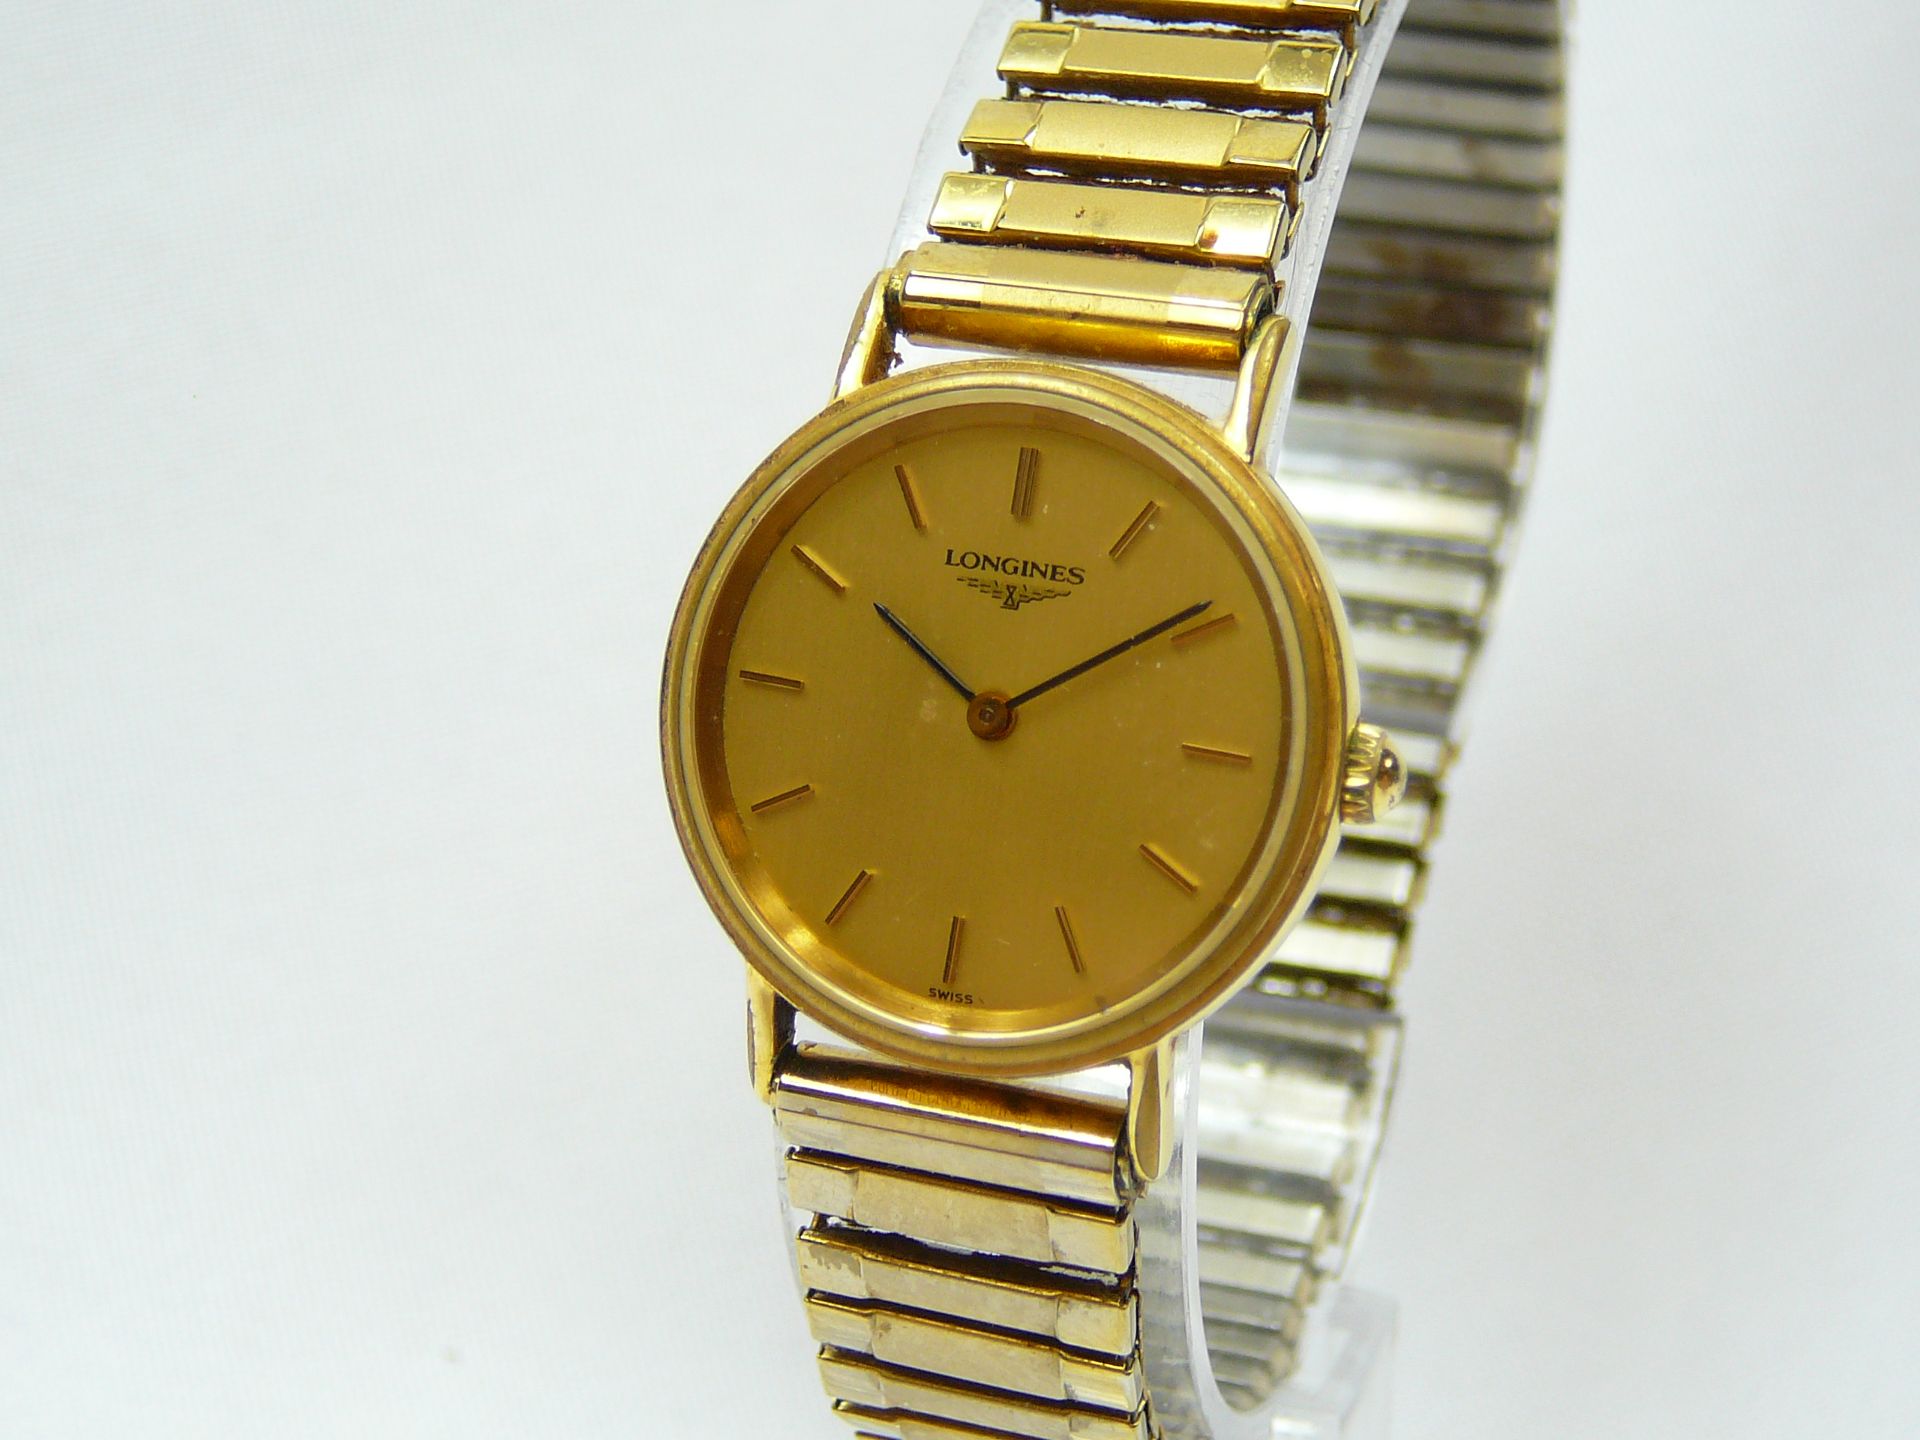 Ladies Longines Quartz Wrist Watch - Image 2 of 3